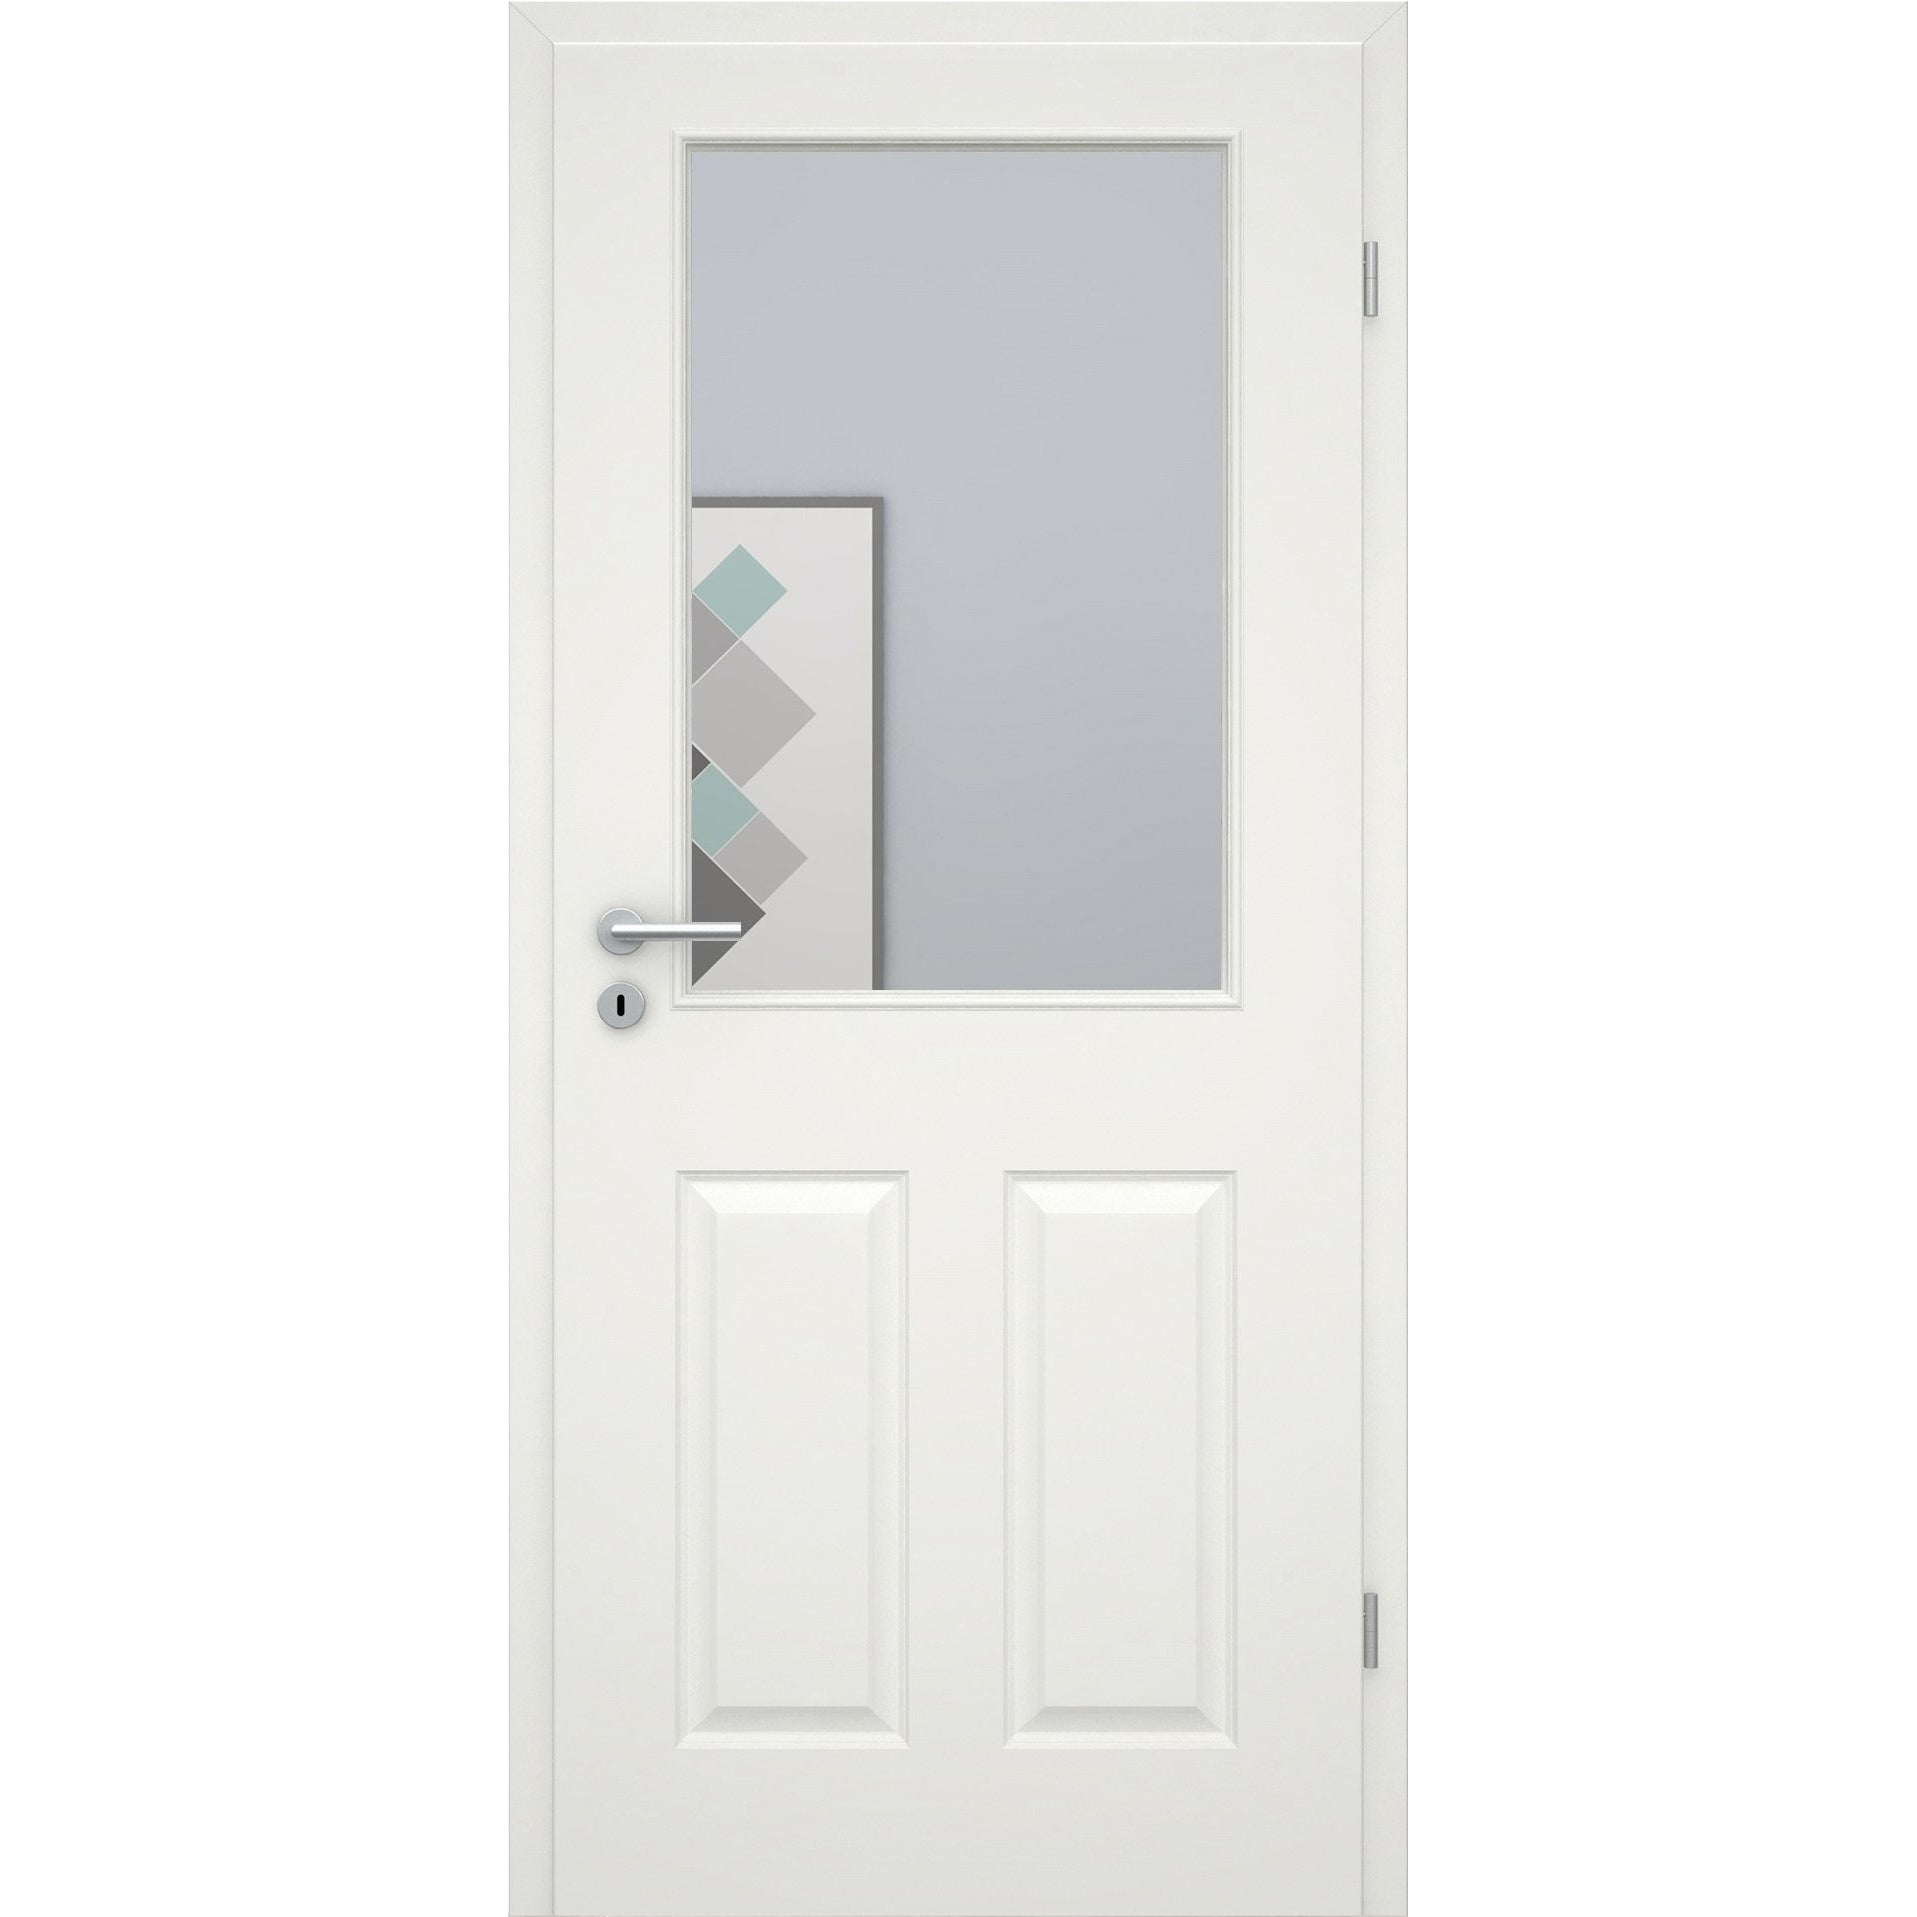 Zimmertür mit Lichtausschnitt groß soft-weiß 4 Kassetten Eckkante - Modell Stiltür K41LA